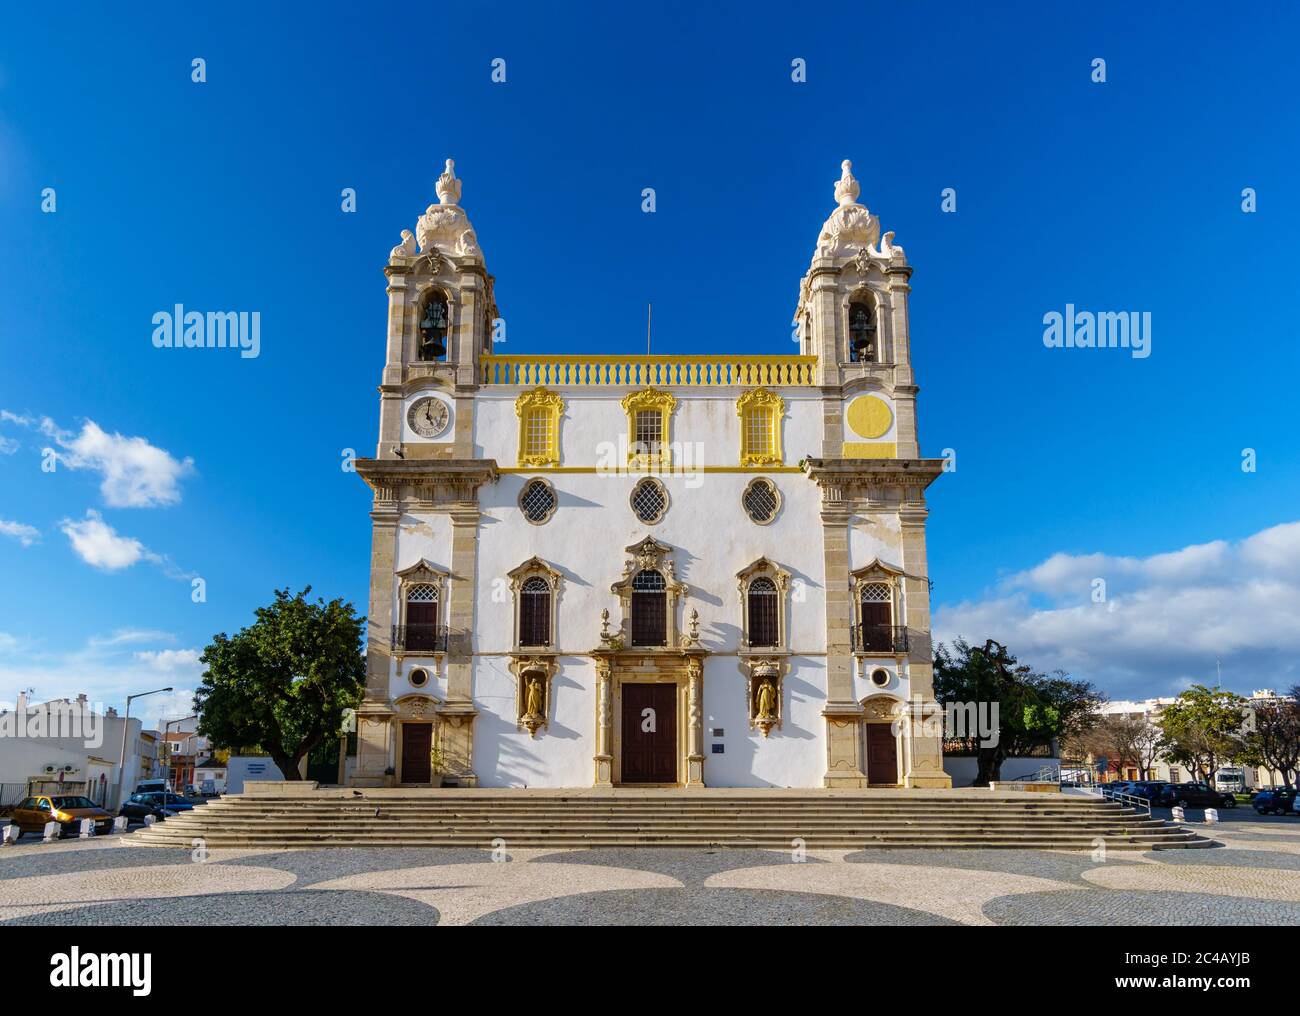 Carmo Kirche (Igreja do Carmo) in Faro, Portugal mit seiner berühmten Kapelle von Knochen in warmem Sonnenlicht - frontale Perspektive, Landschaftsorientierung Stockfoto